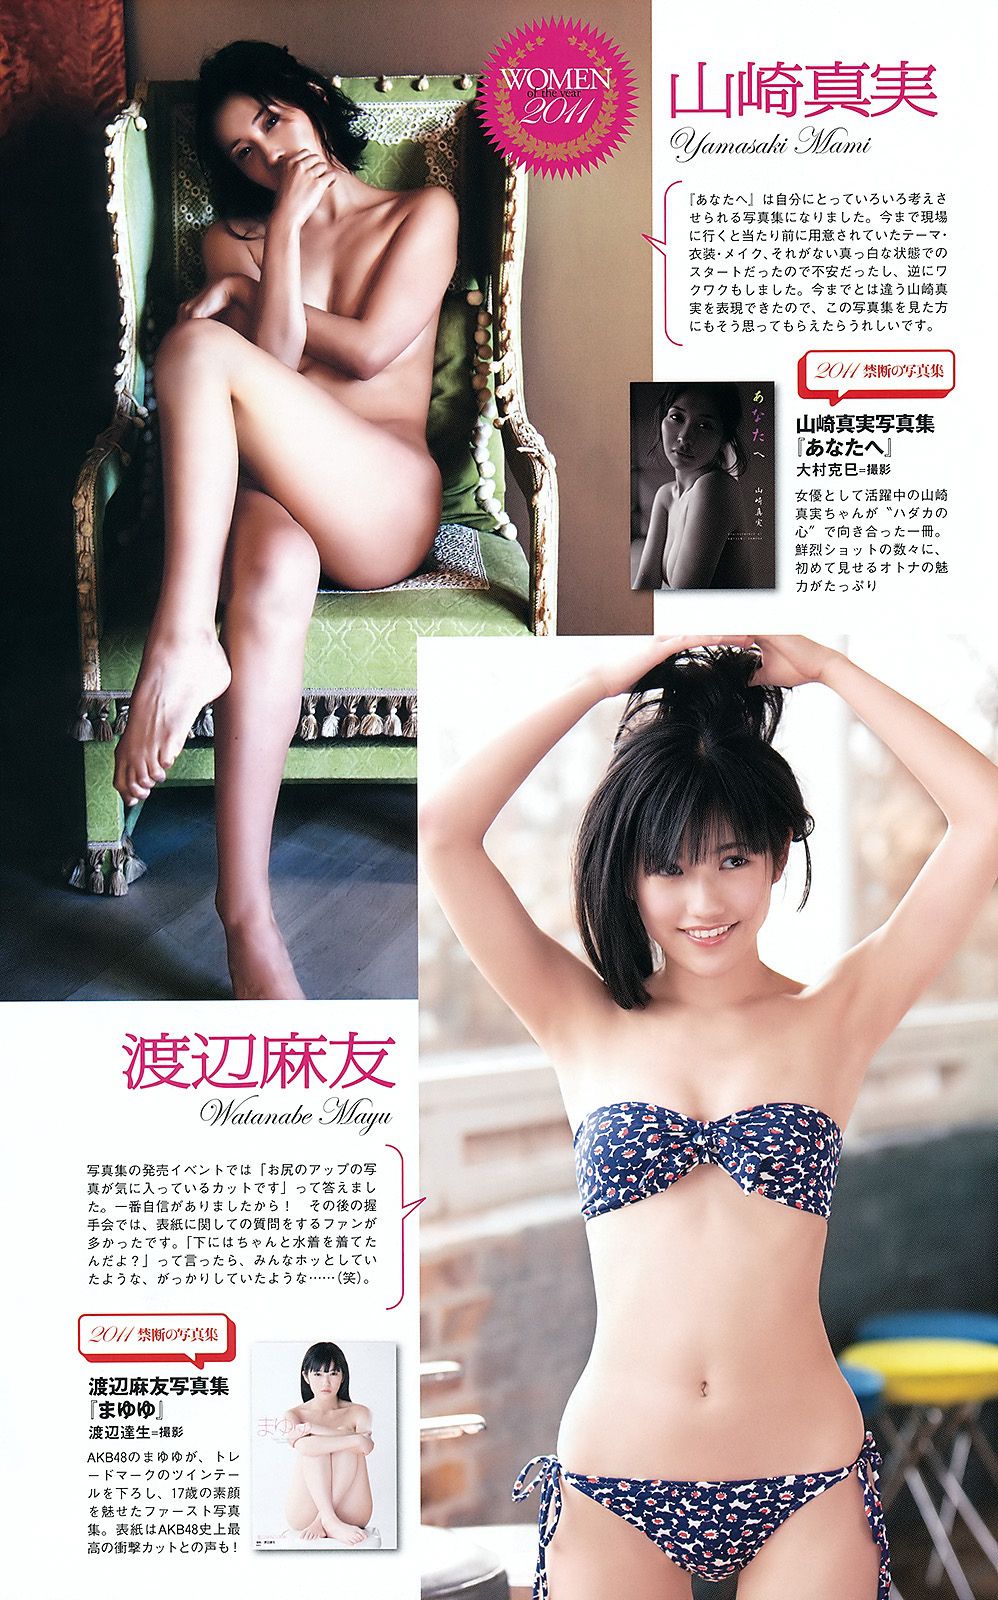 AKB48 Yumi Kobayashi Rurika Yokoyama Aiko Kaito Hiroko Sato Arisa Nishida [Weekly Playboy] 2012 No.01-02 Photograph